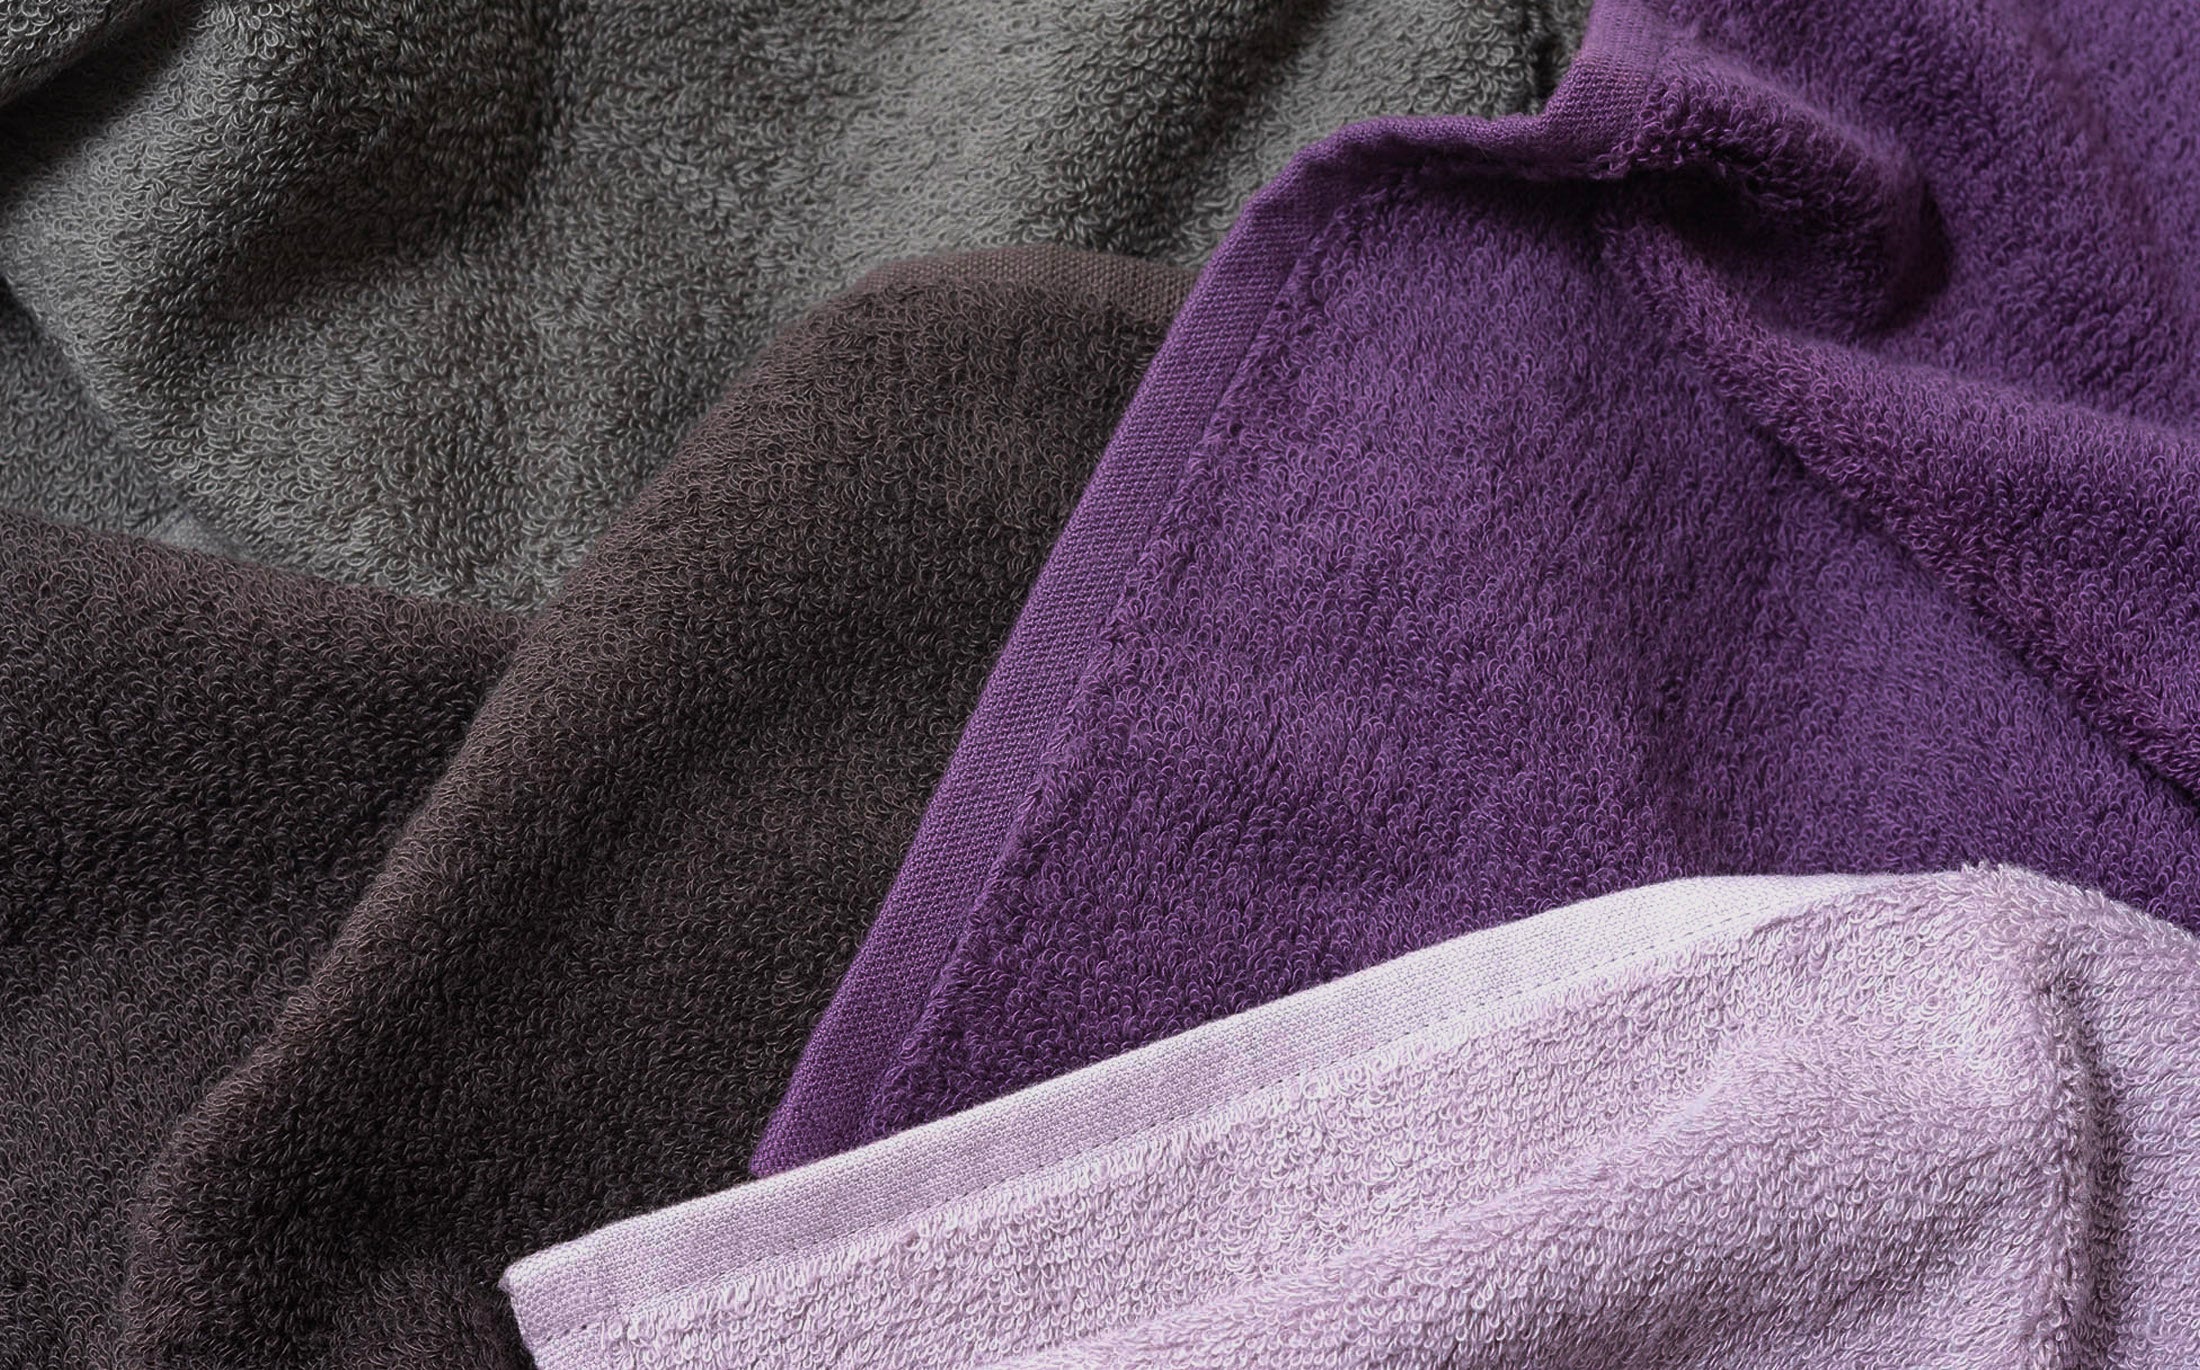 Cotton Color Towel - Deep Violet